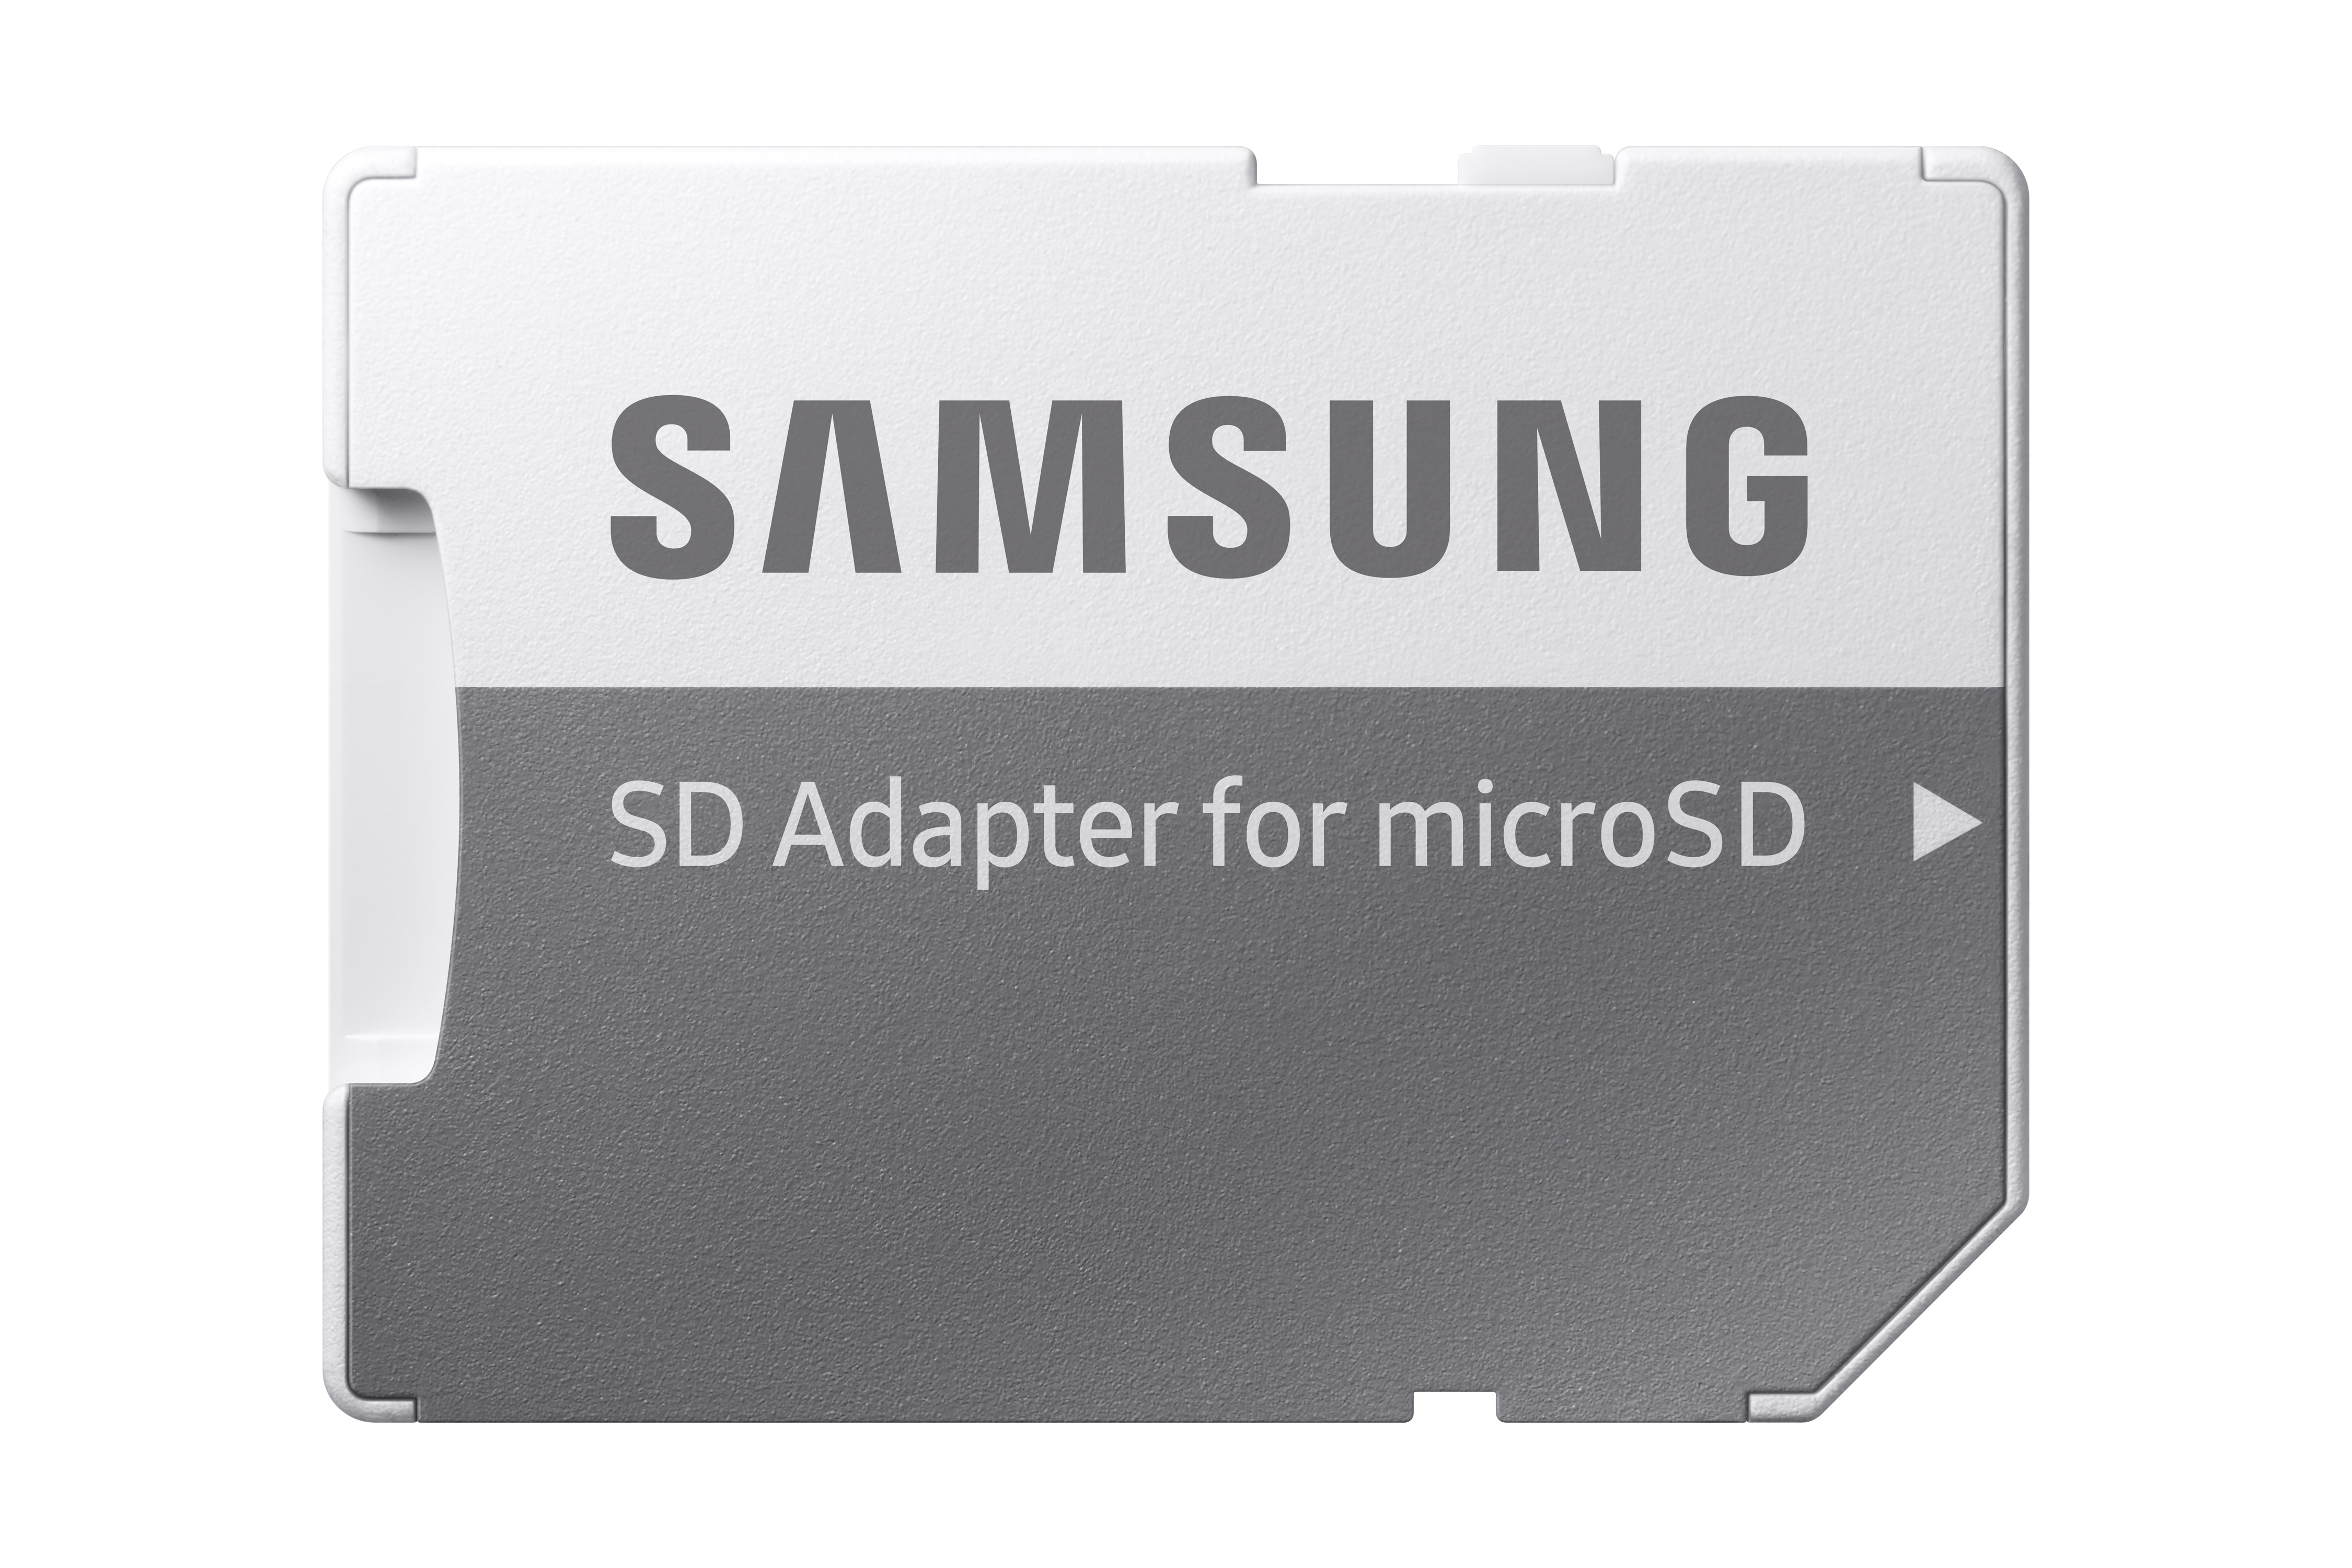 Microsd Samsung Evo